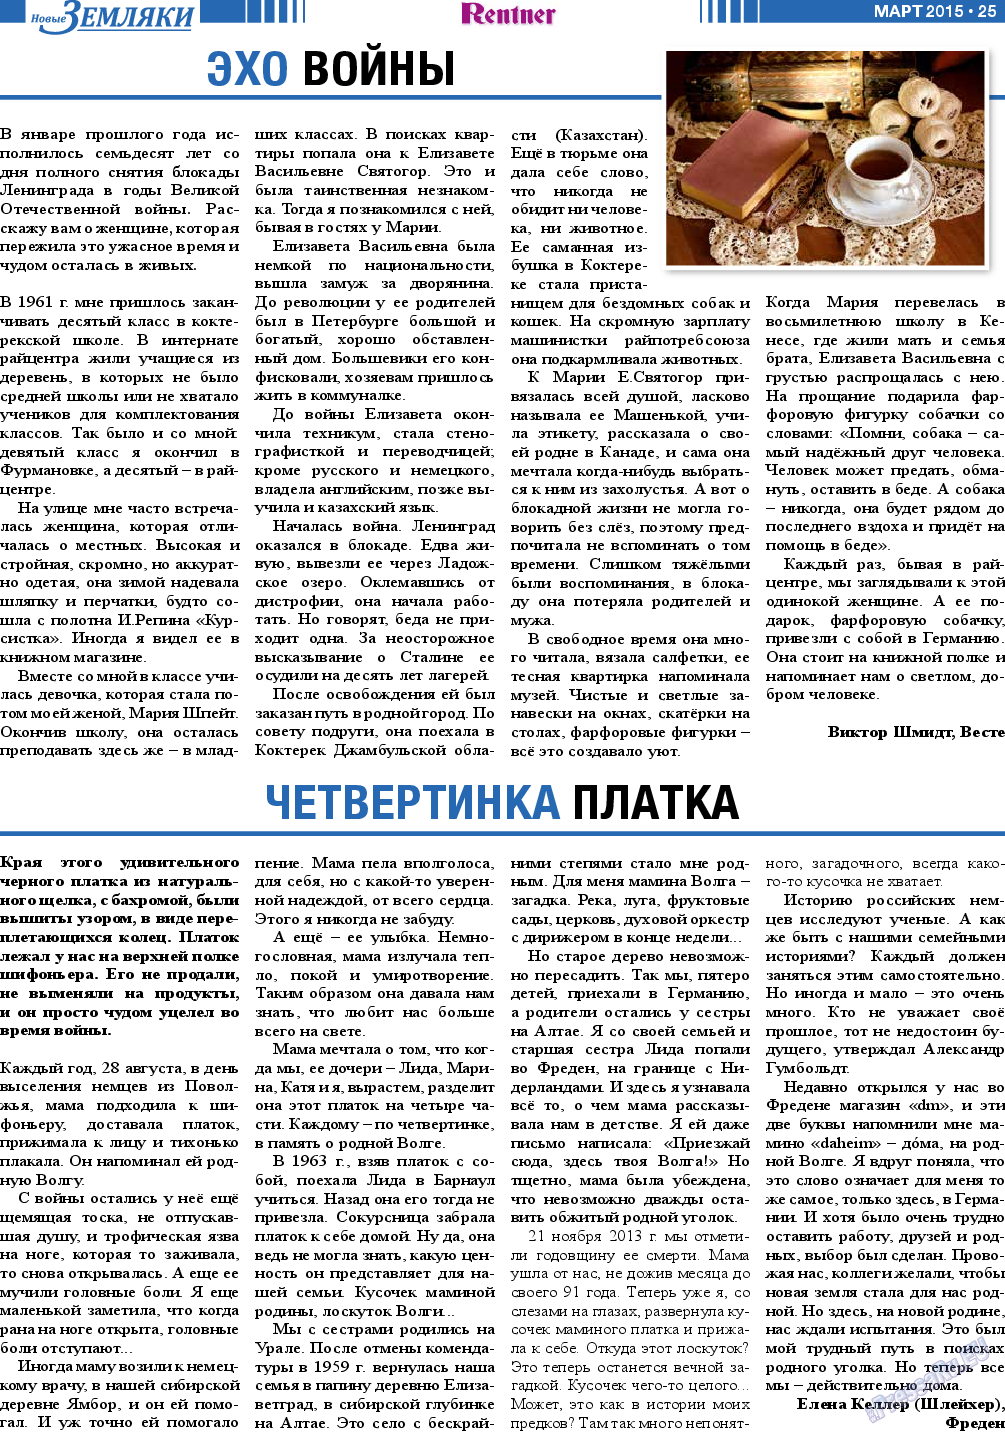 Новые Земляки, газета. 2015 №3 стр.25